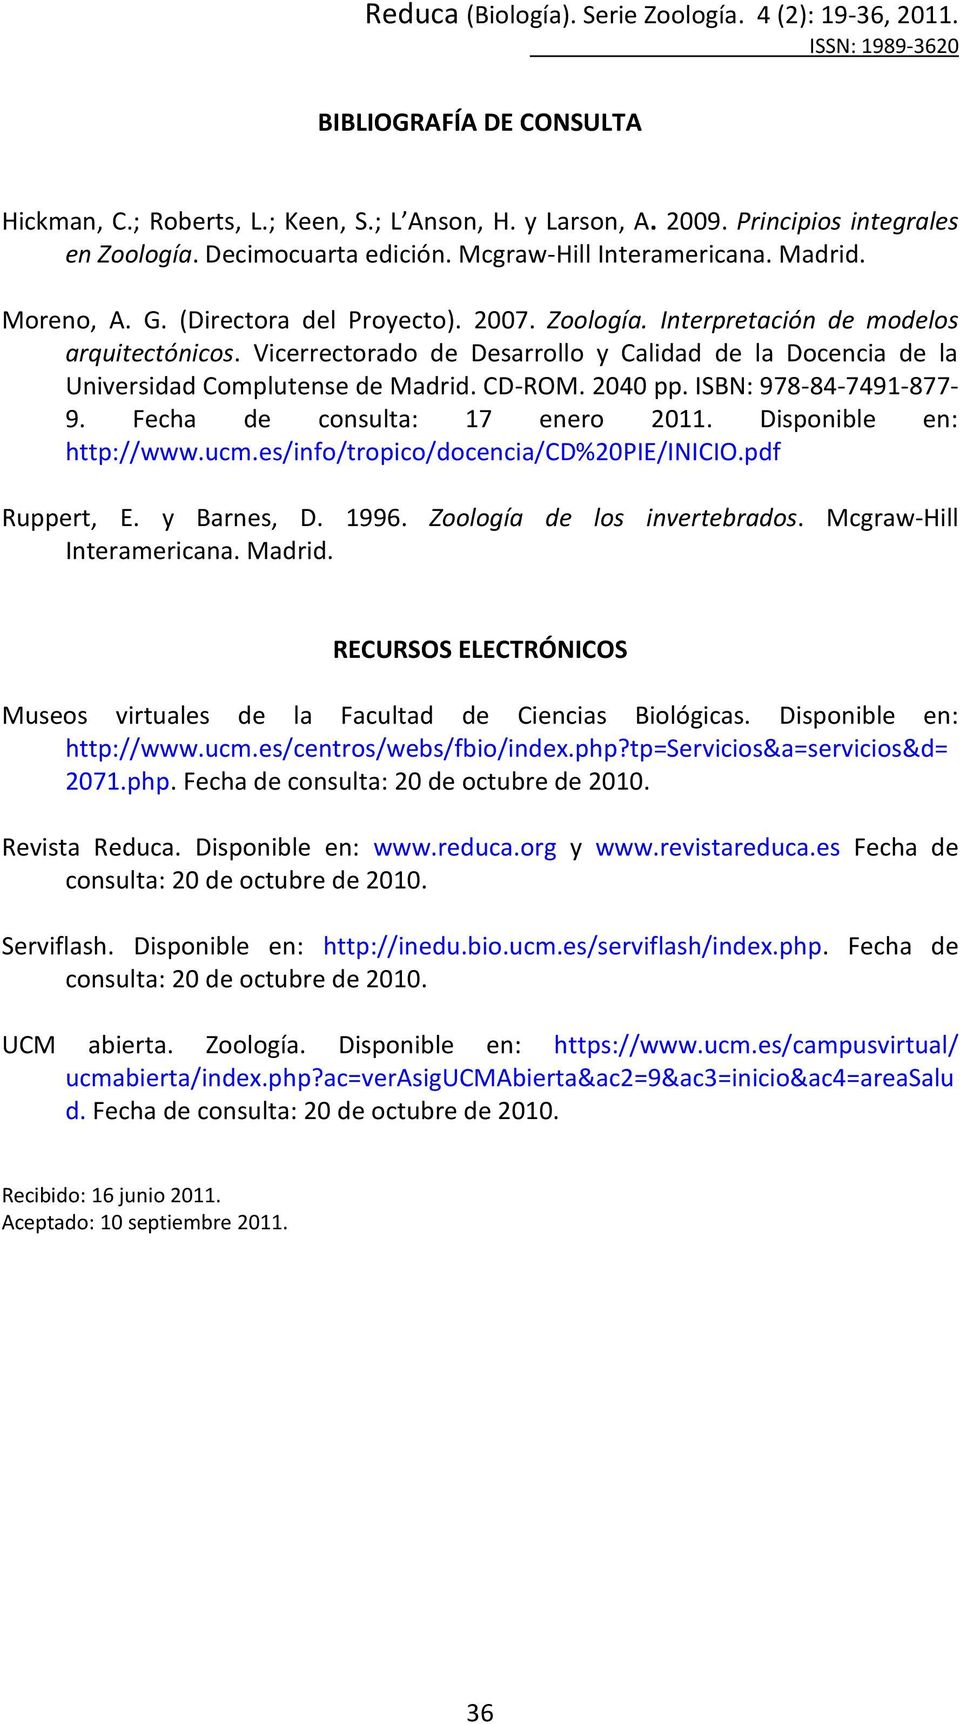 ISBN: 978-84-7491-877- 9. Fecha de consulta: 17 enero 2011. Disponible en: http://www.ucm.es/info/tropico/docencia/cd%20pie/inicio.pdf Ruppert, E. y Barnes, D. 1996. Zoología de los invertebrados.